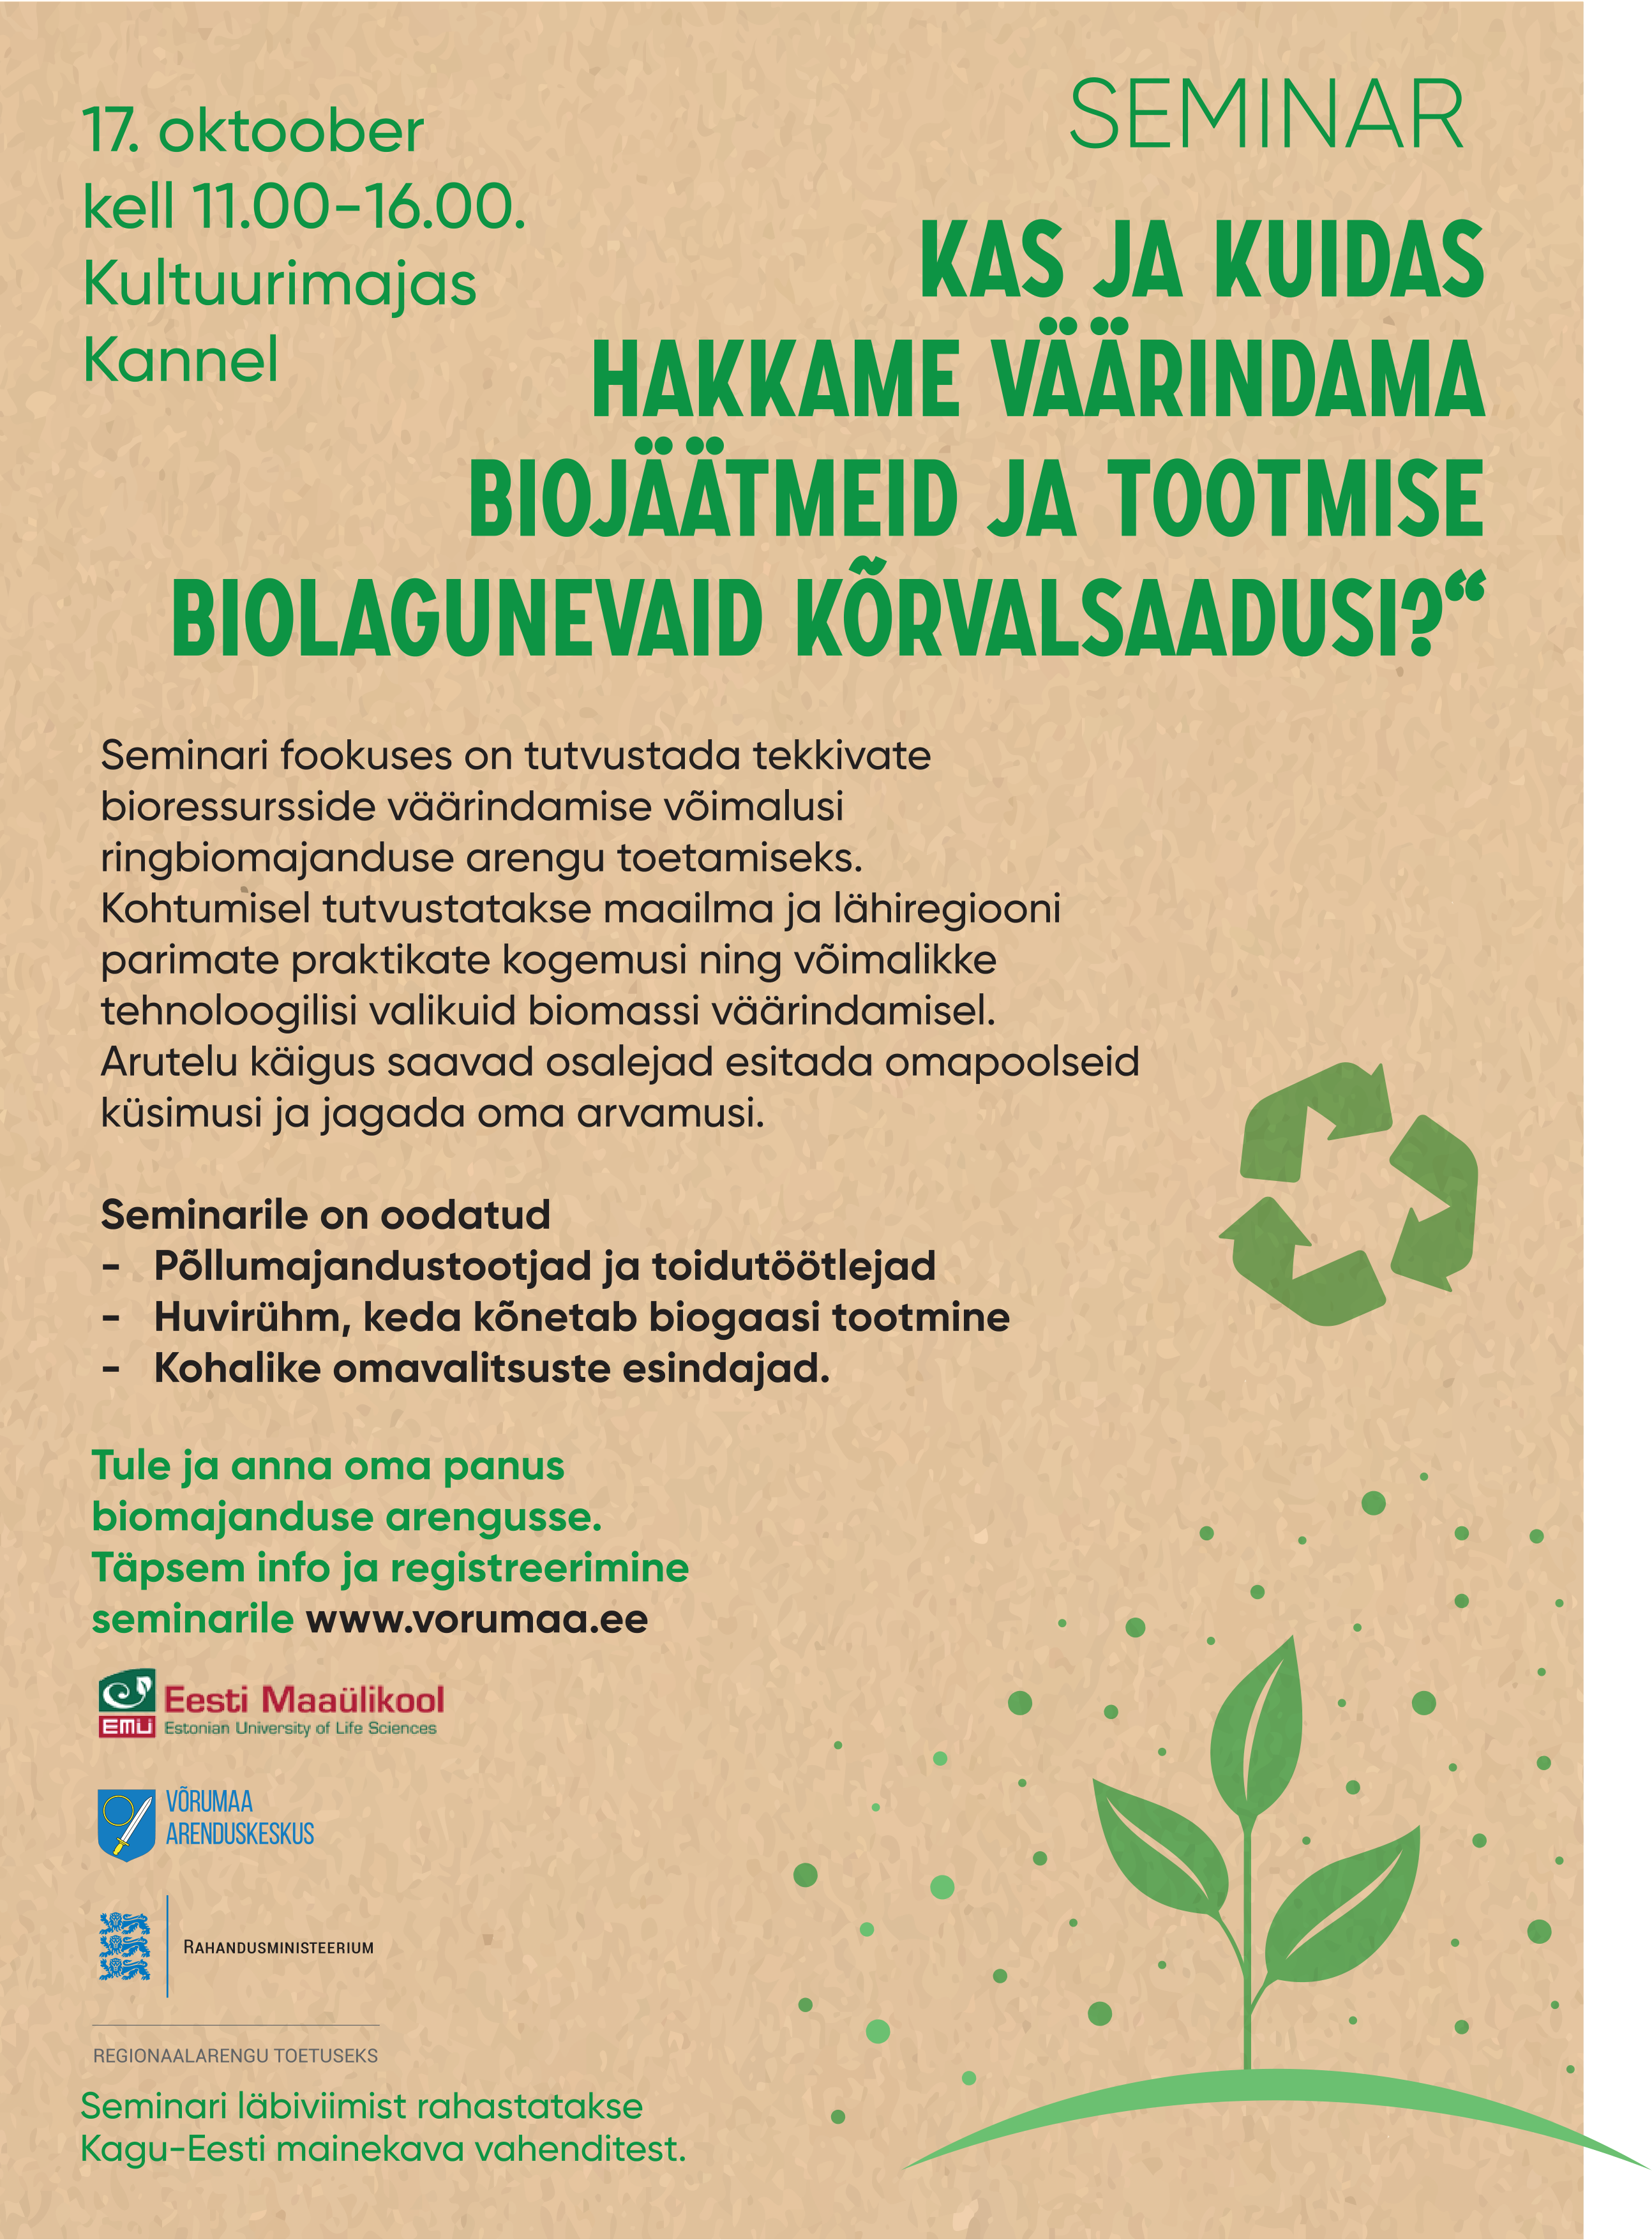 Seminar “Kas ja kuidas hakkame väärindama biojäätmeid ja tootmise biolagunevaid kõrvalsaadusi?”